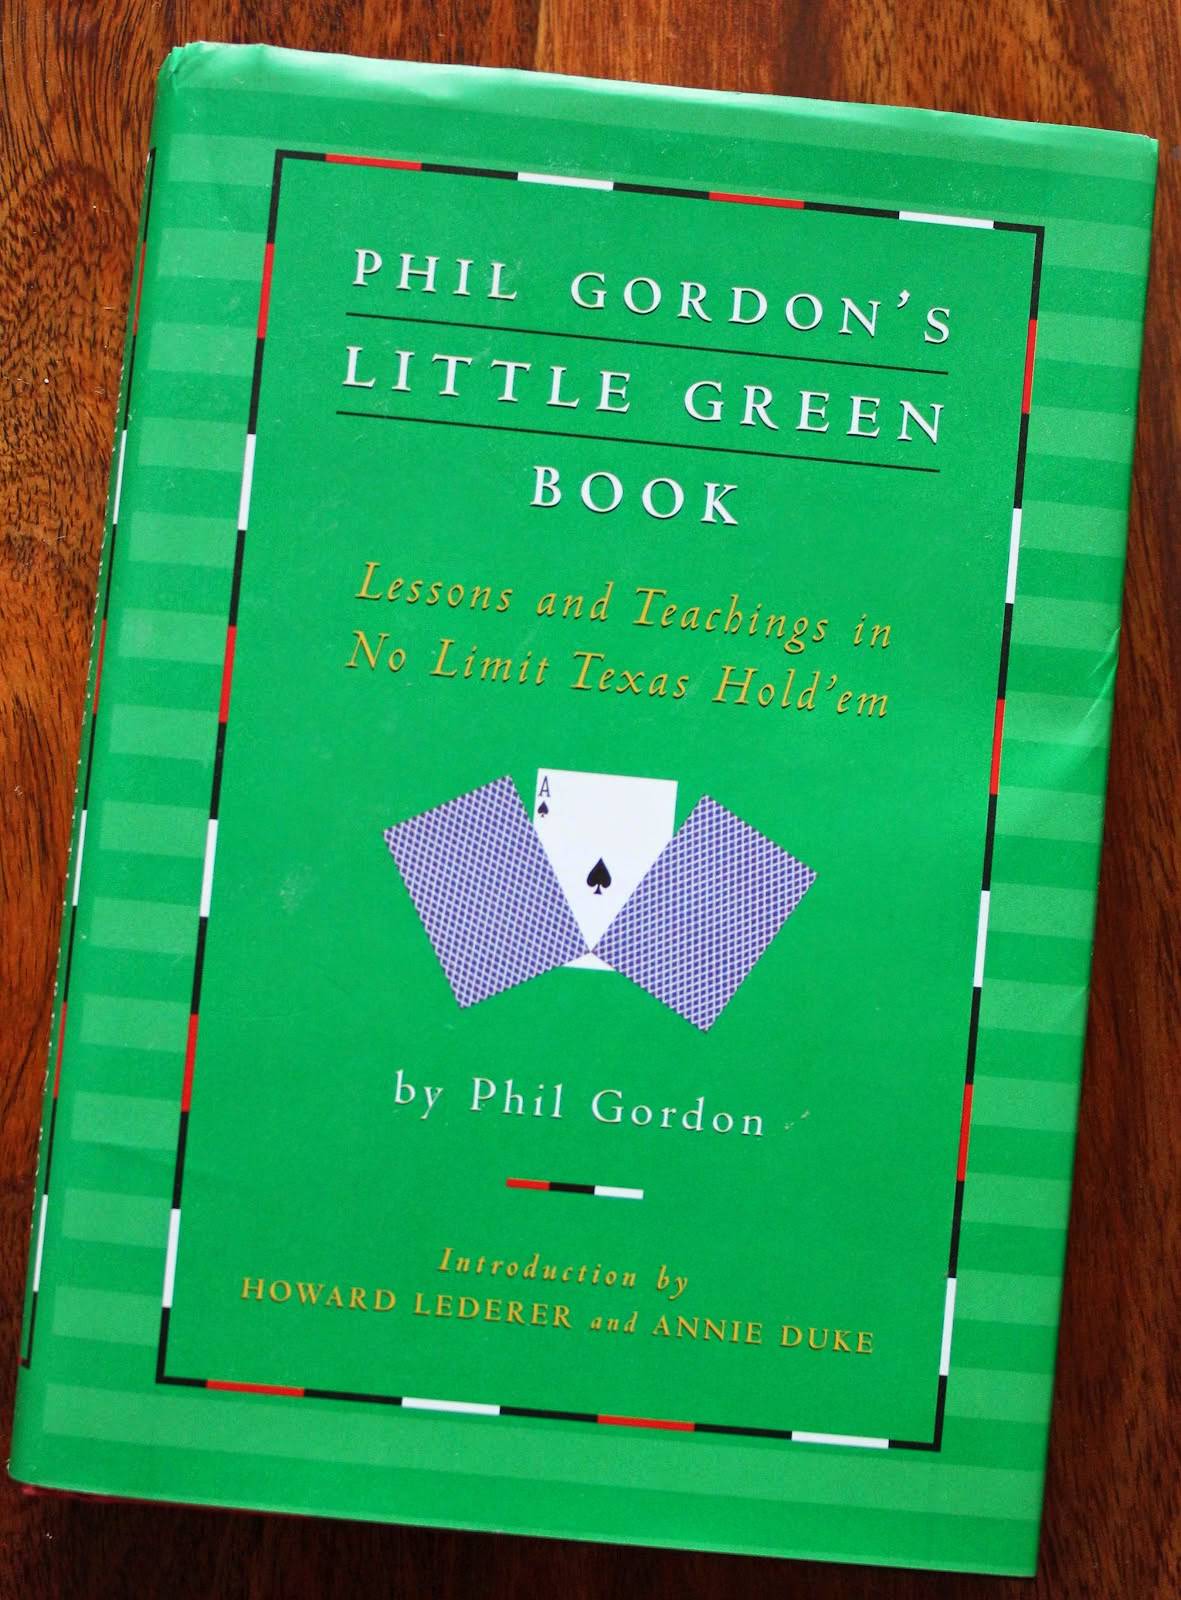 《小綠書 Little Green Book》讀書筆記: 交易員必讀經典書